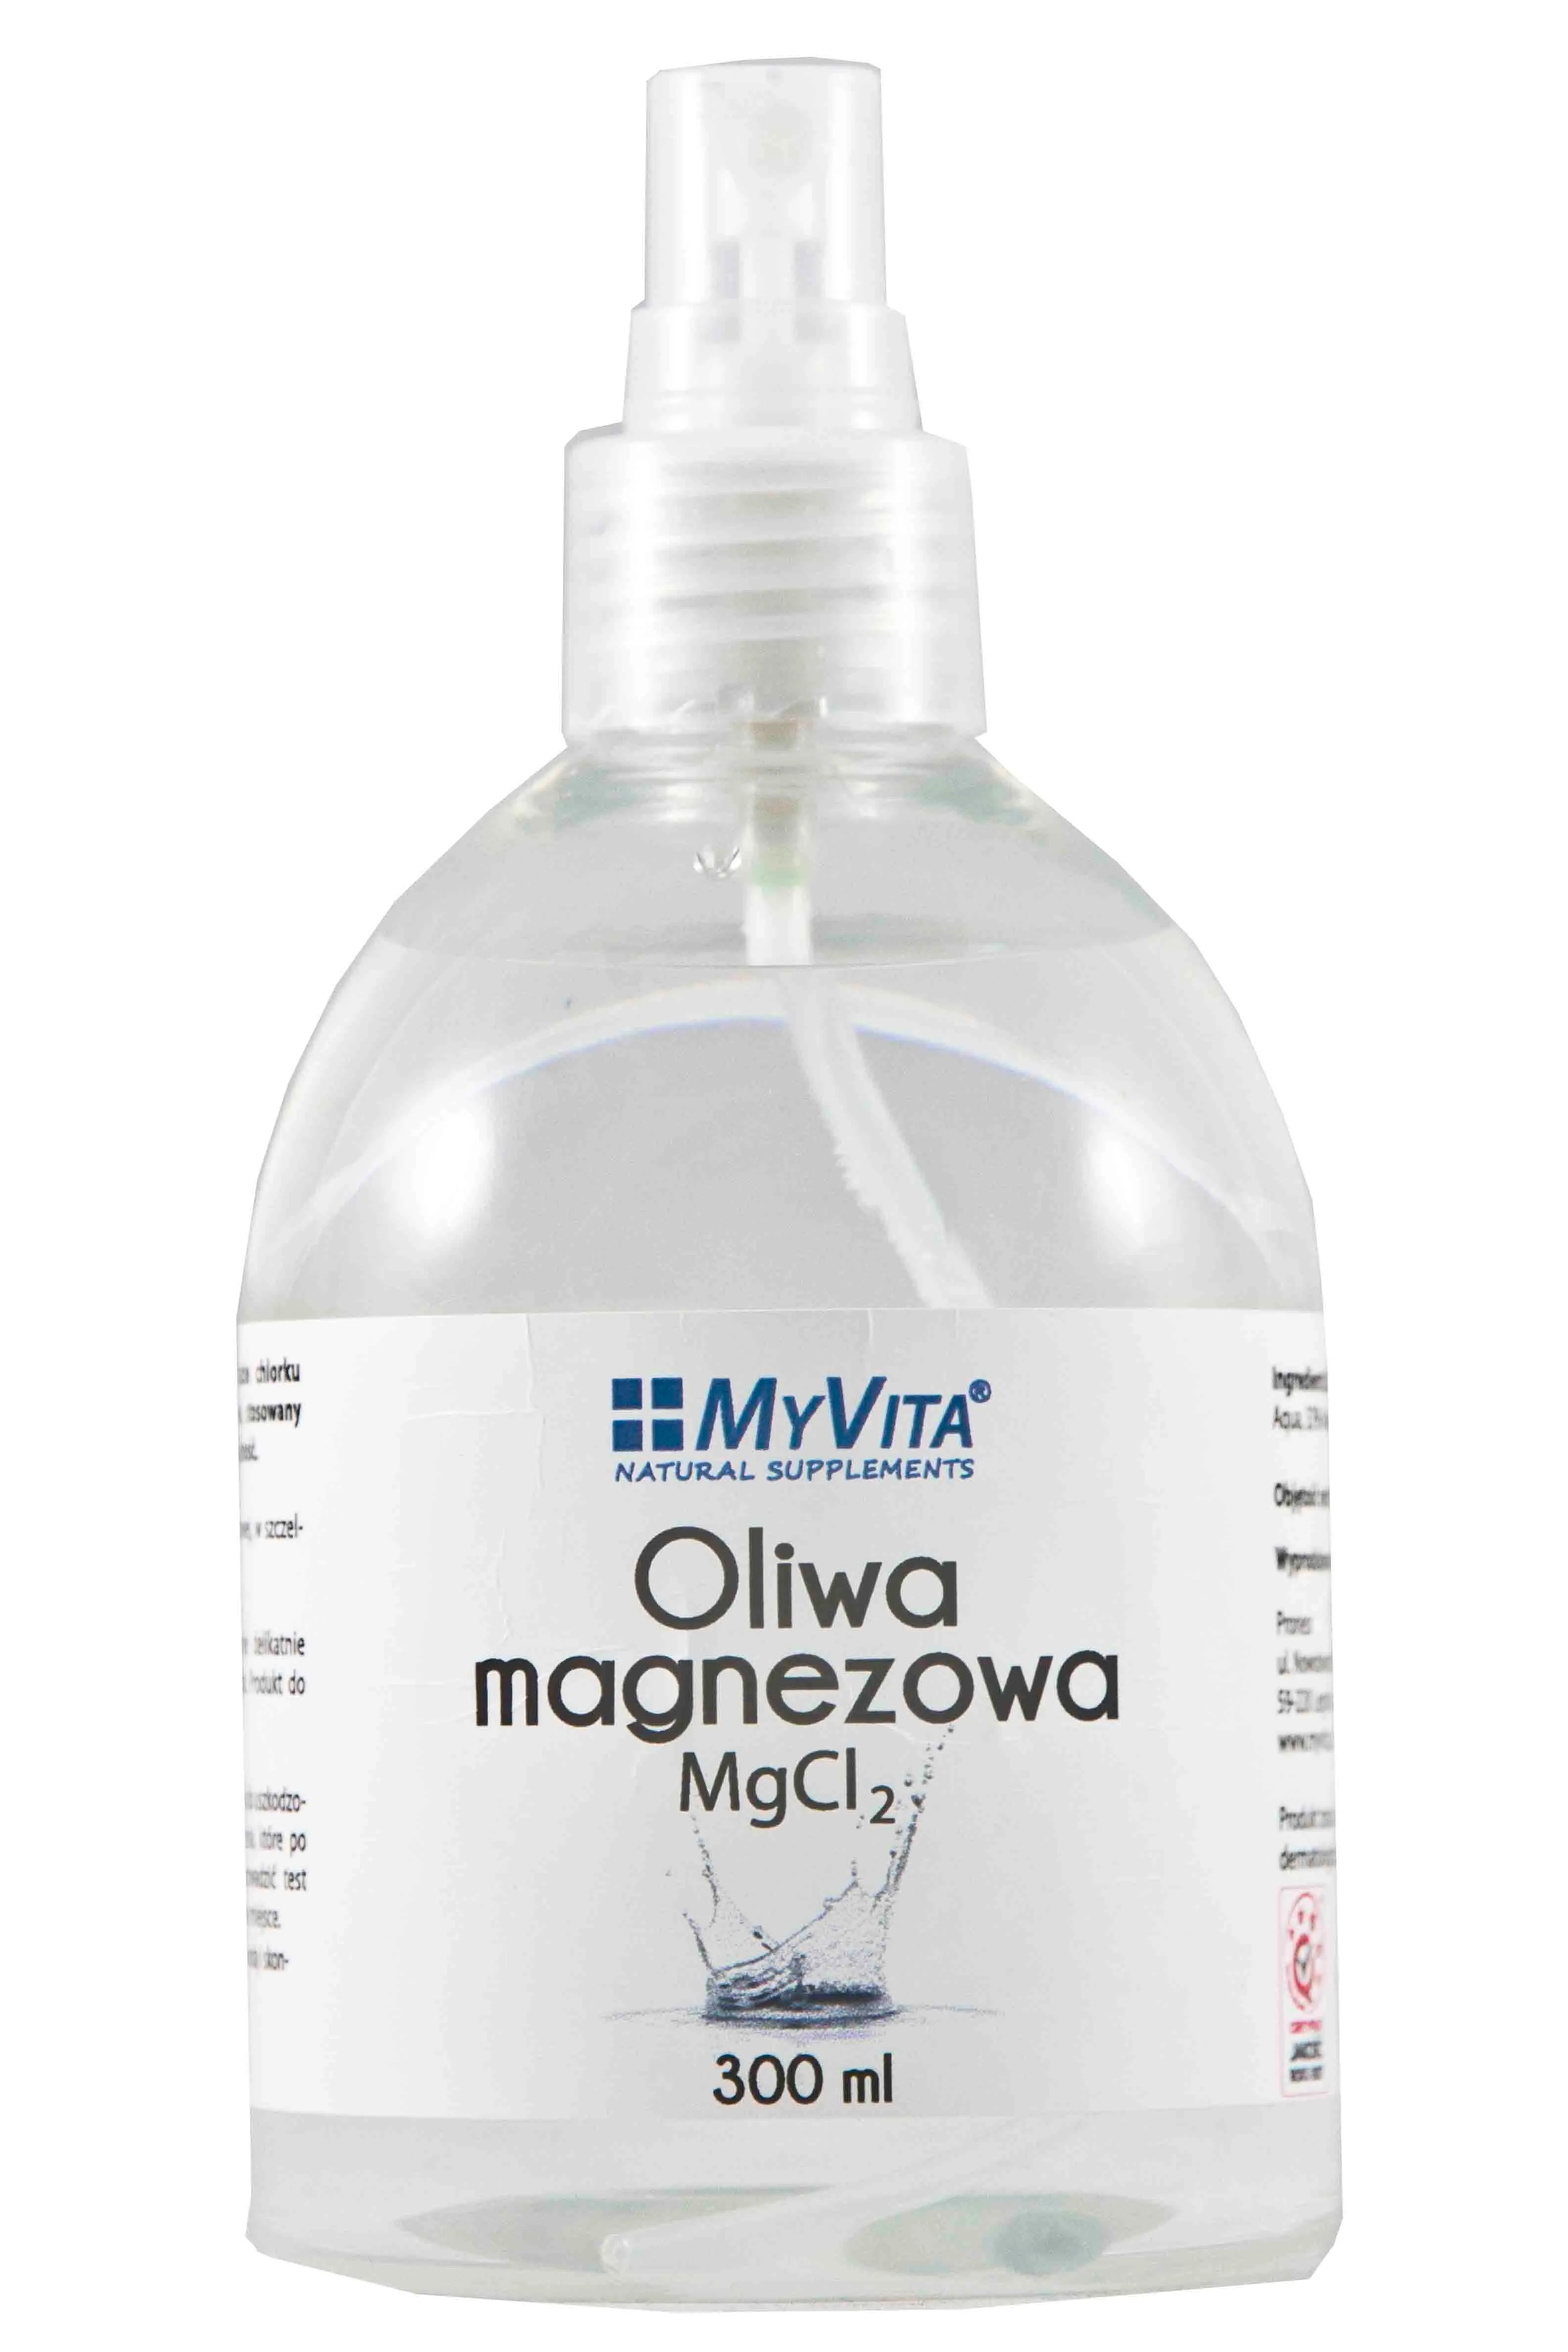 MyVita, Oliwa magnezowa MgCl2, 300ml